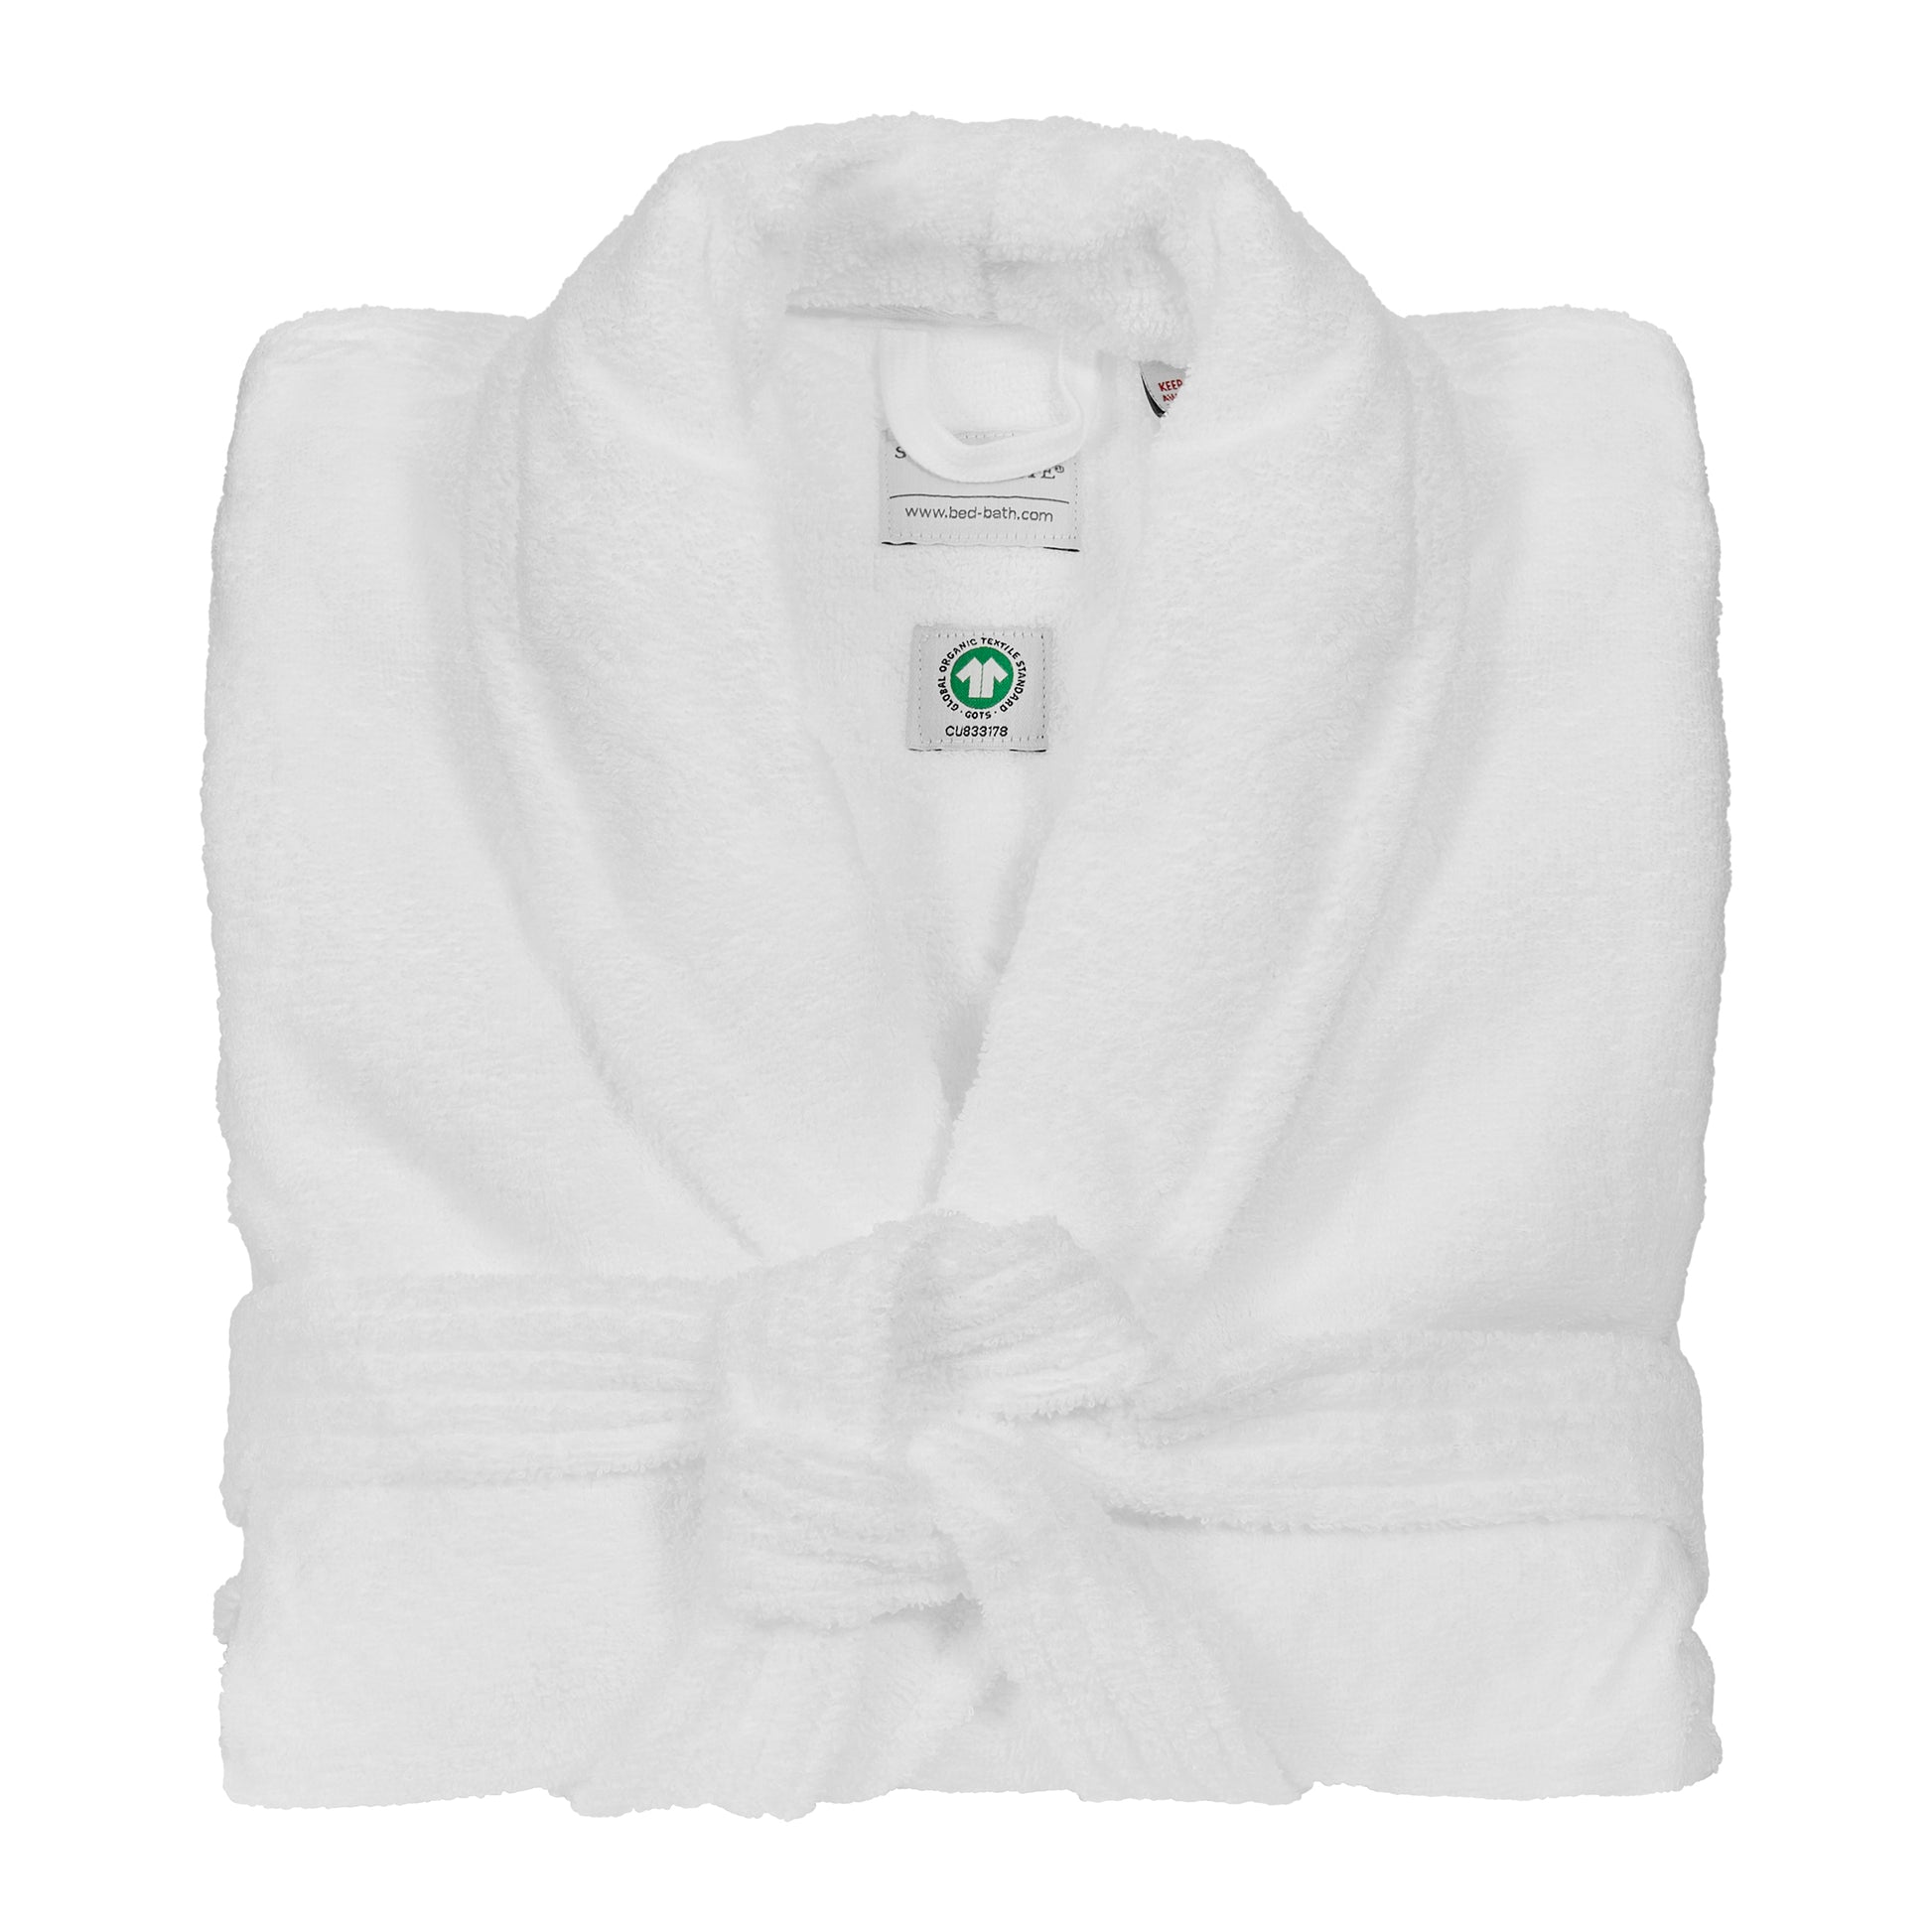 Scandinavian White bathrobe white folded